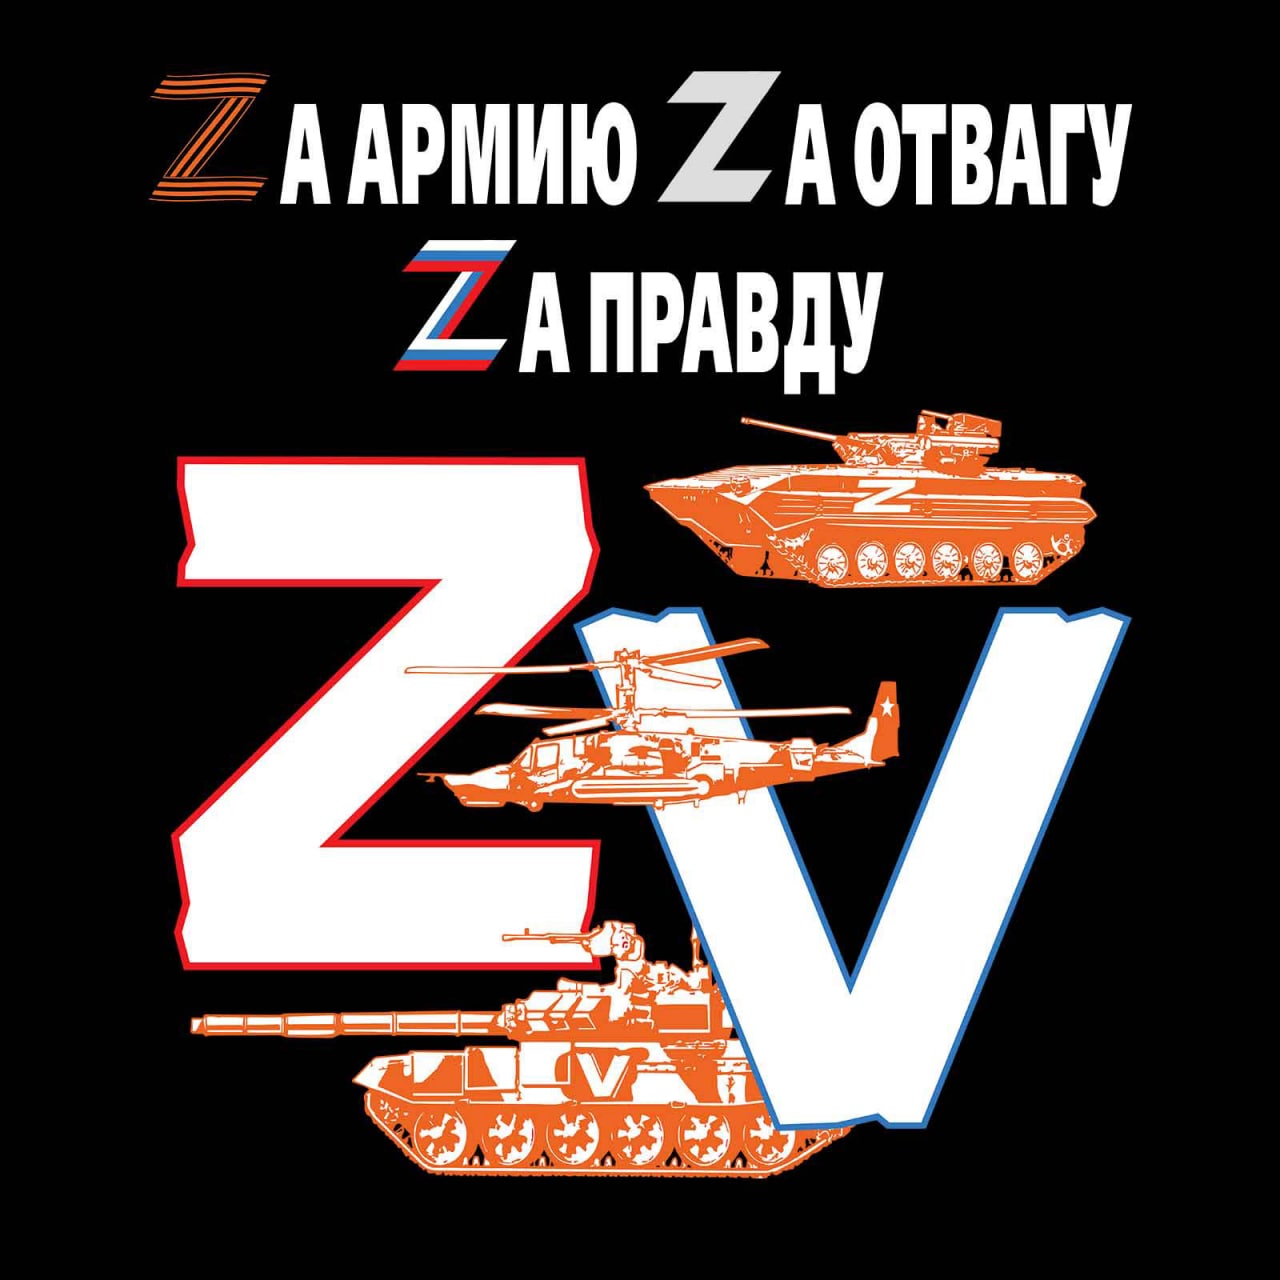 Купить одежду с логотипом Z